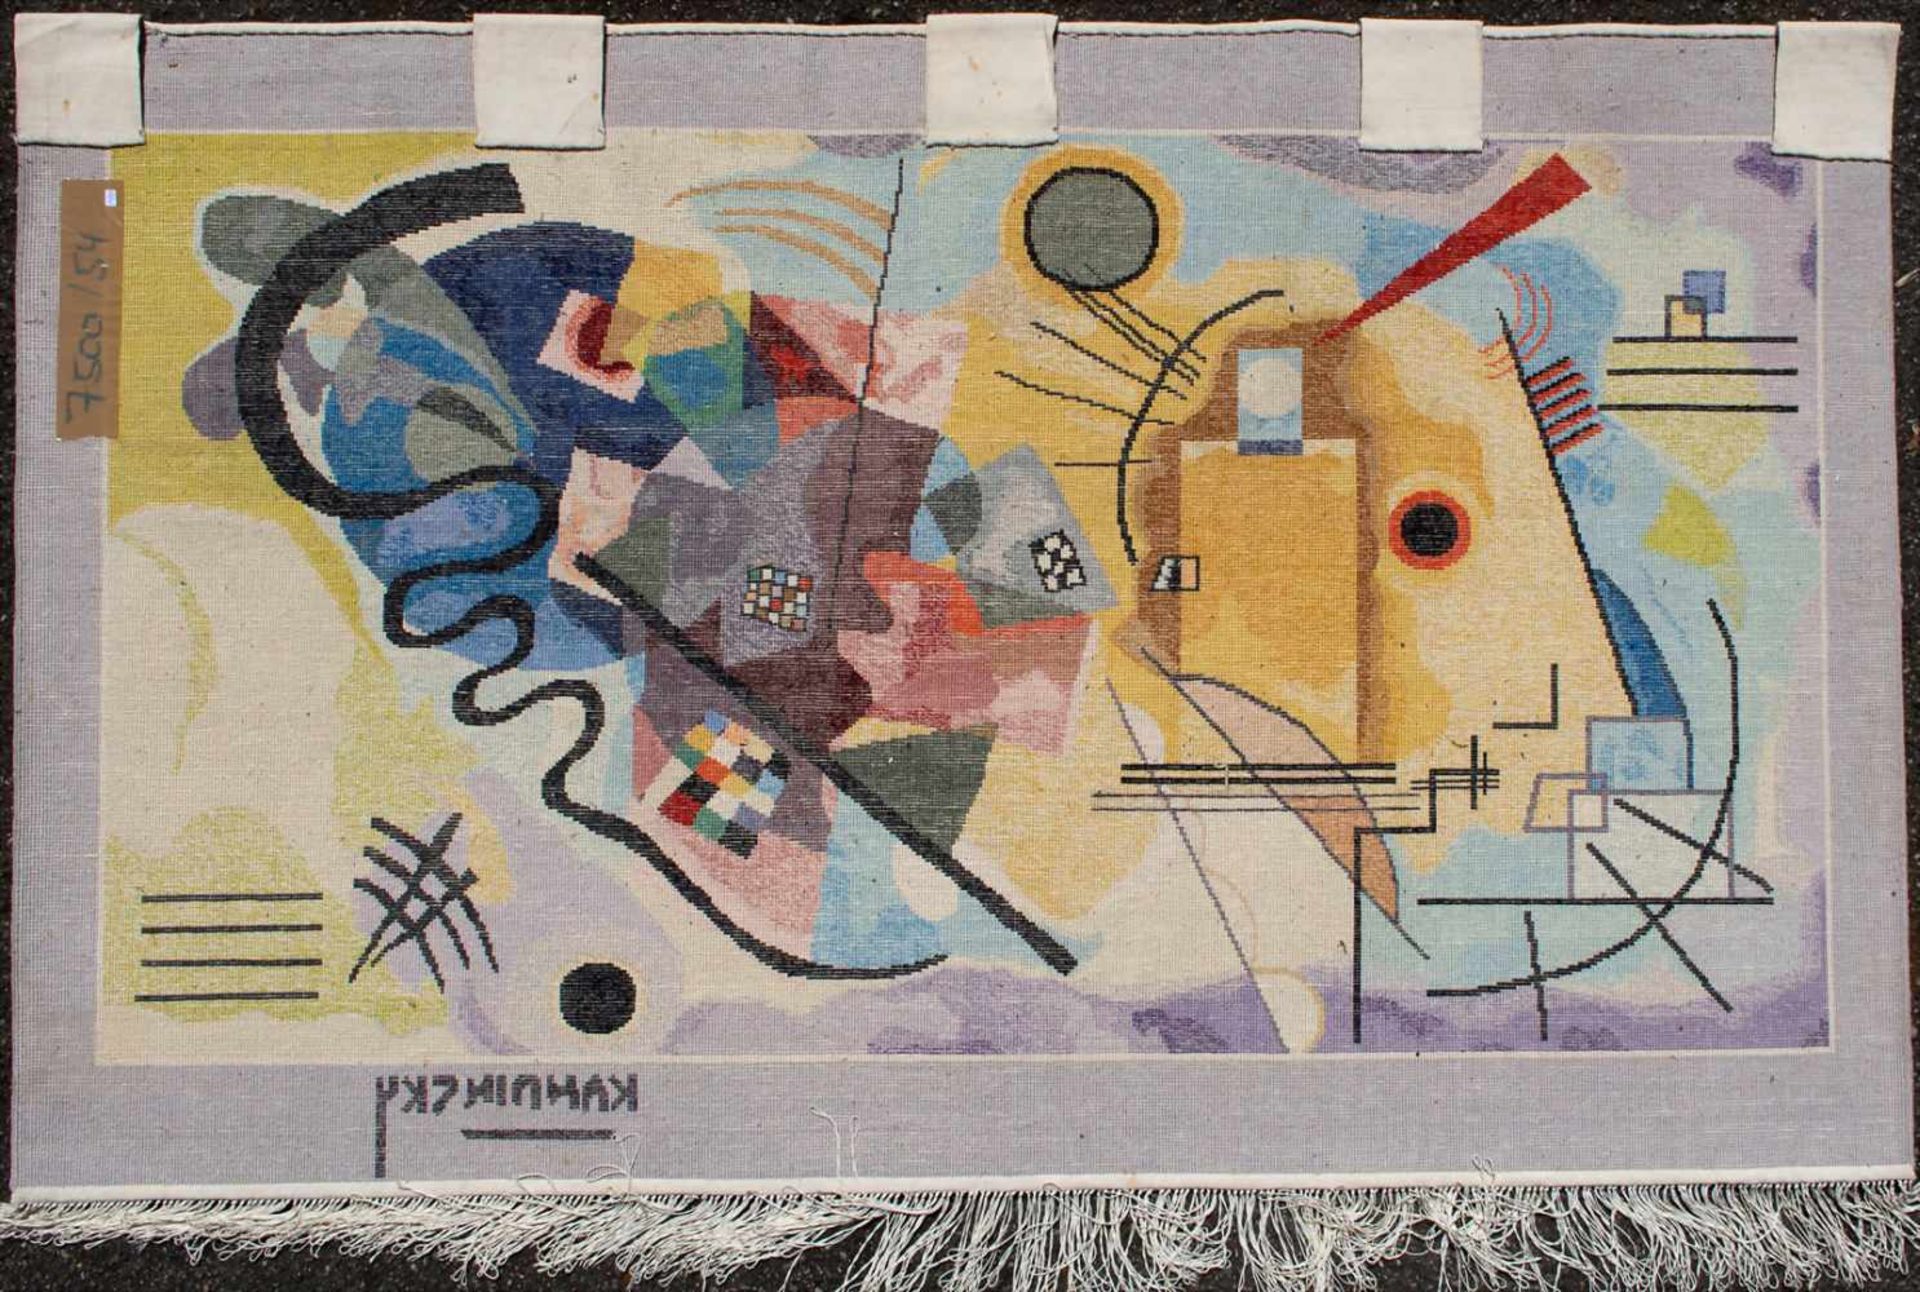 Seidenteppich 'Kandinsky' / A silk carpet 'Kandinsky'Material: Seide auf Seide,Maße: 151 x 93 cm, - Bild 2 aus 3